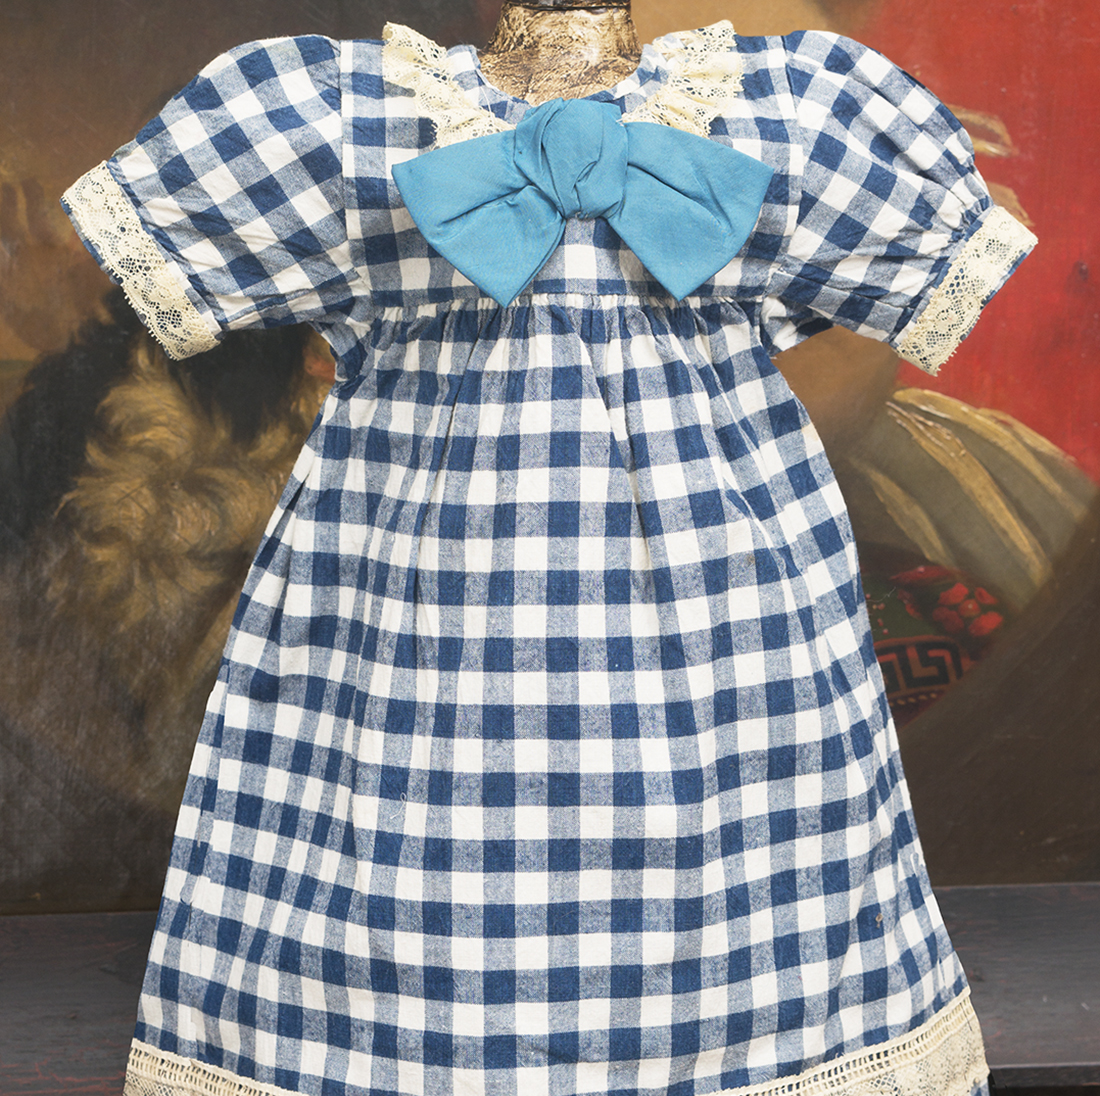 Antique Original Checkered dress